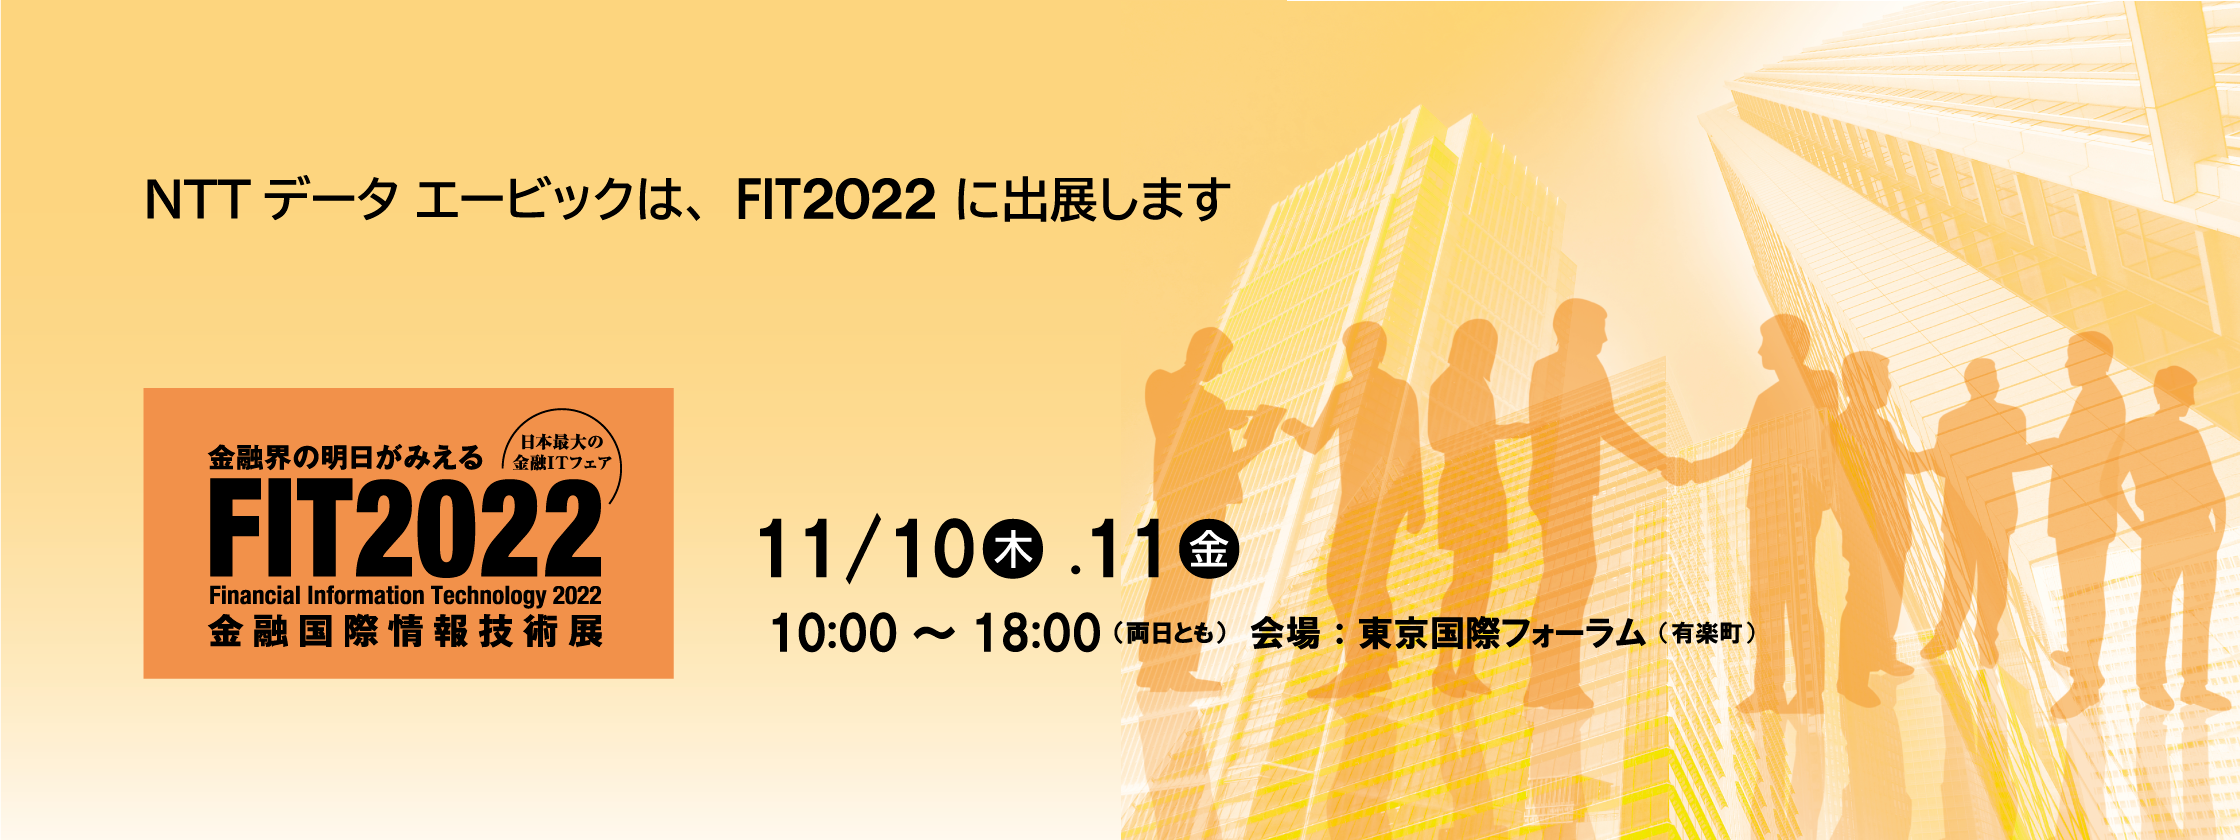 NTTデータエービックはFIT2022に出展します